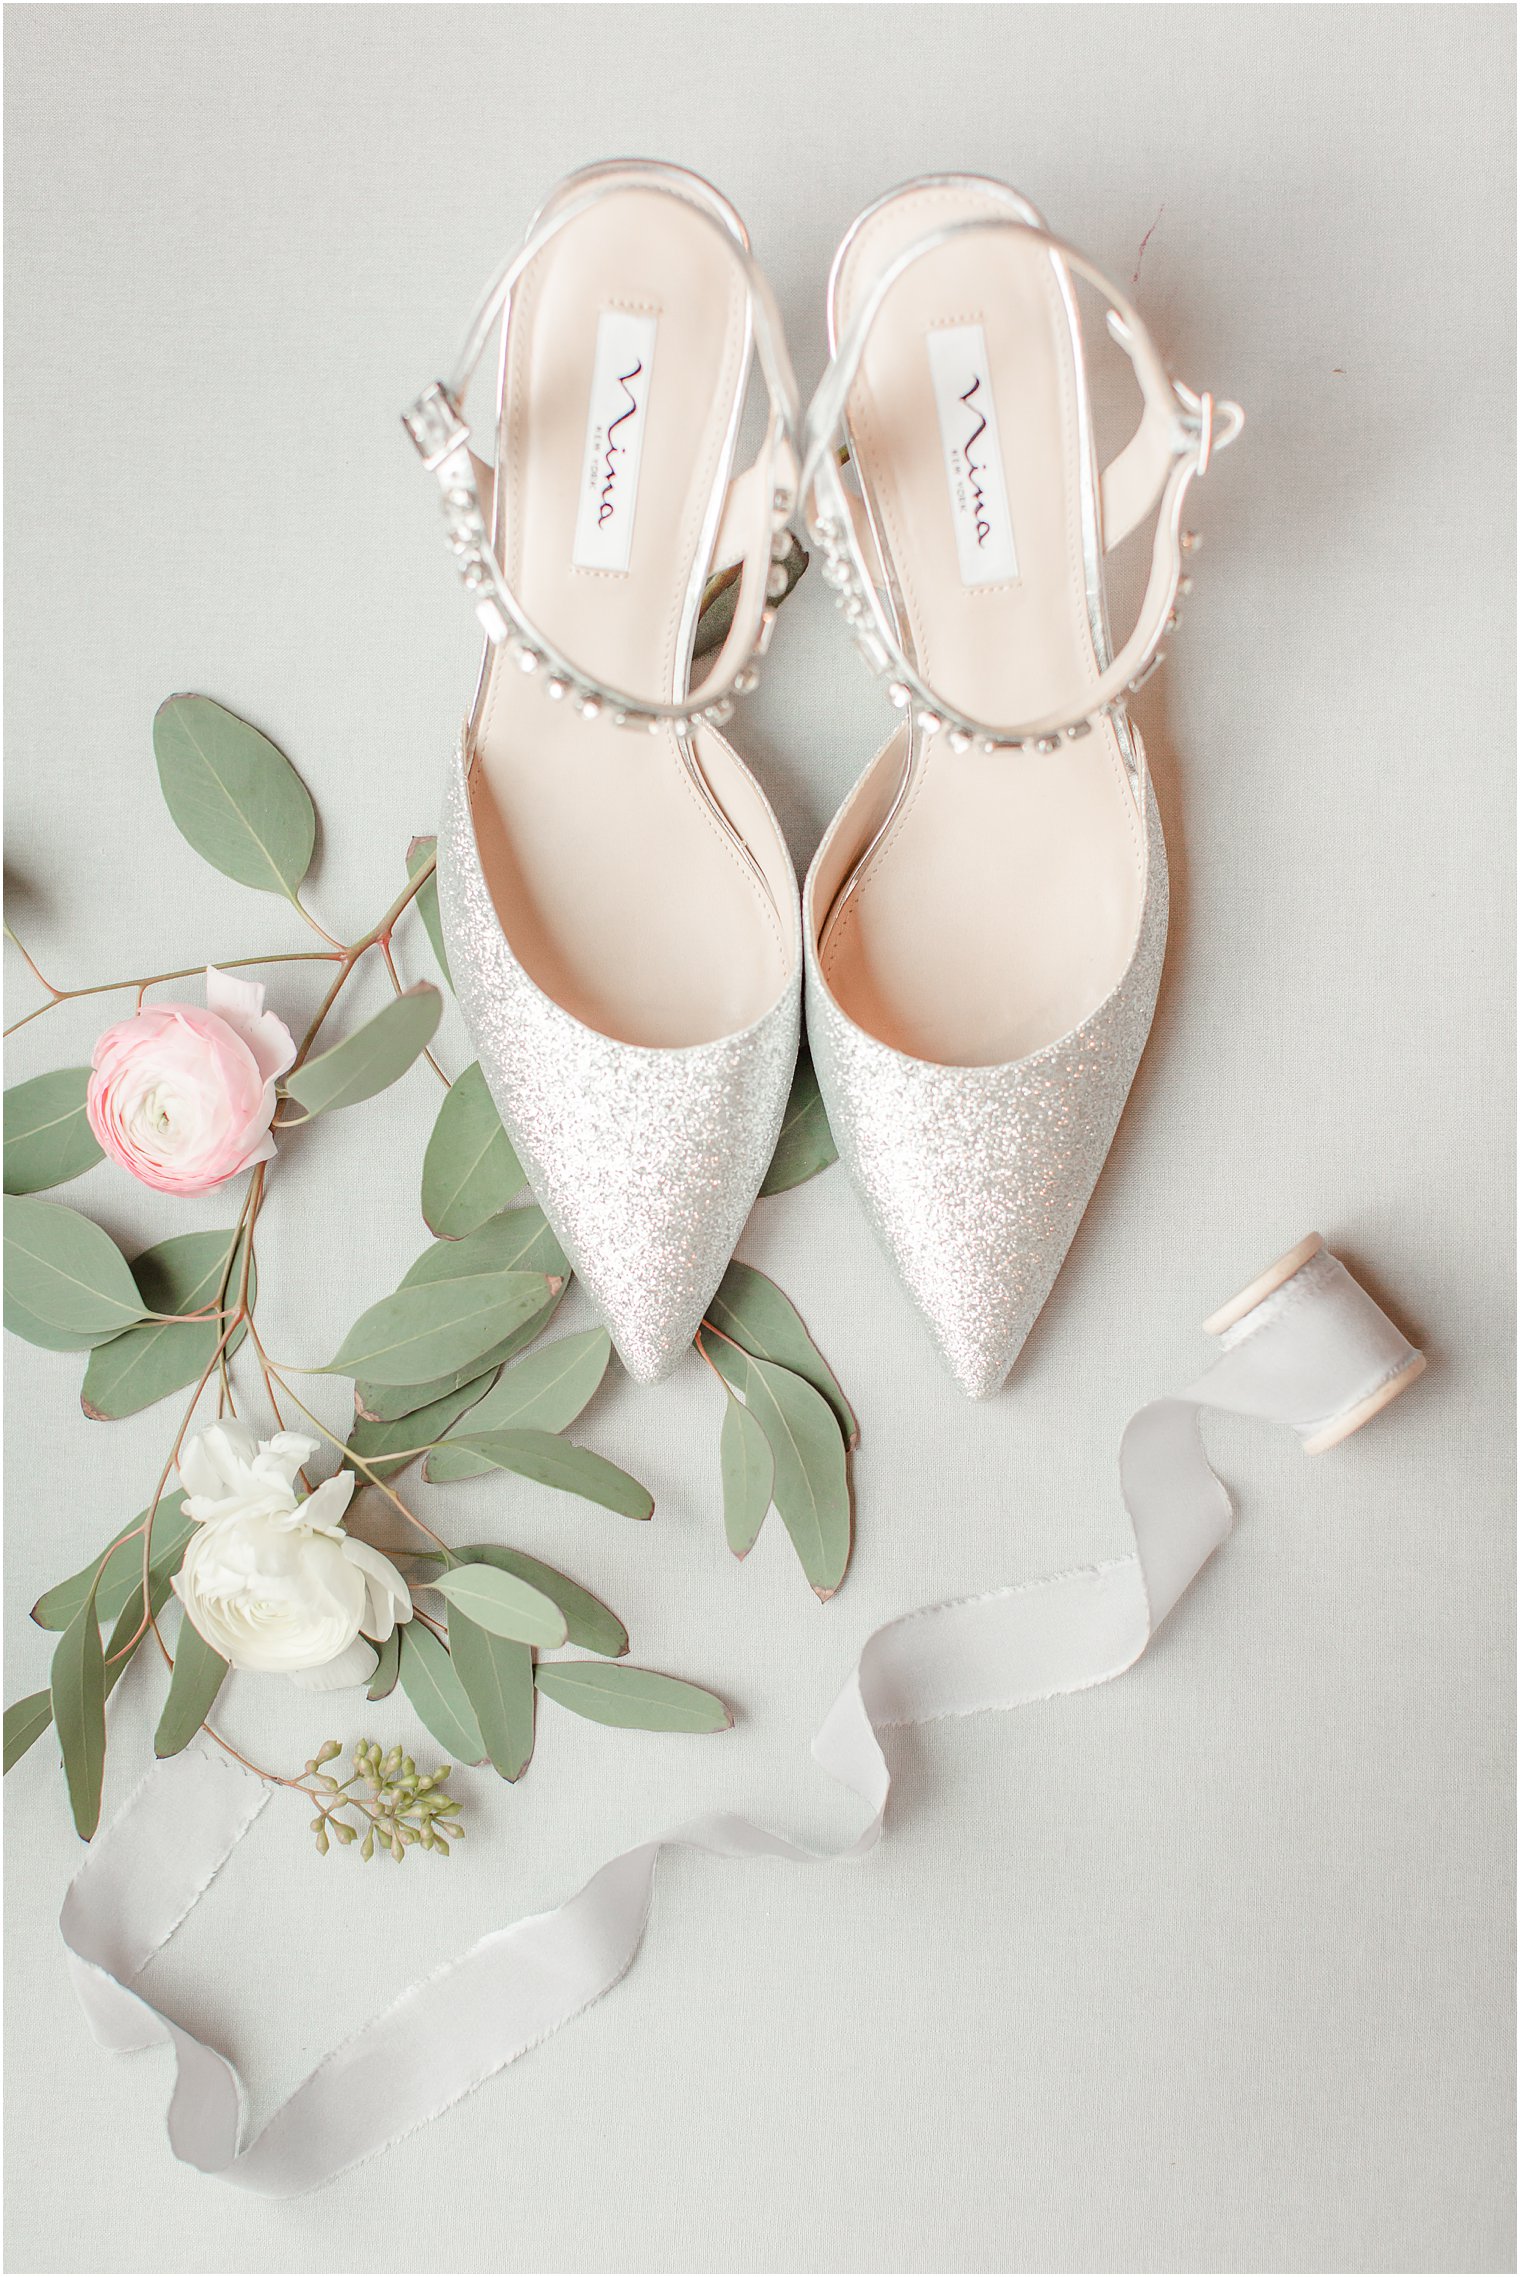 Nina bridal shoes